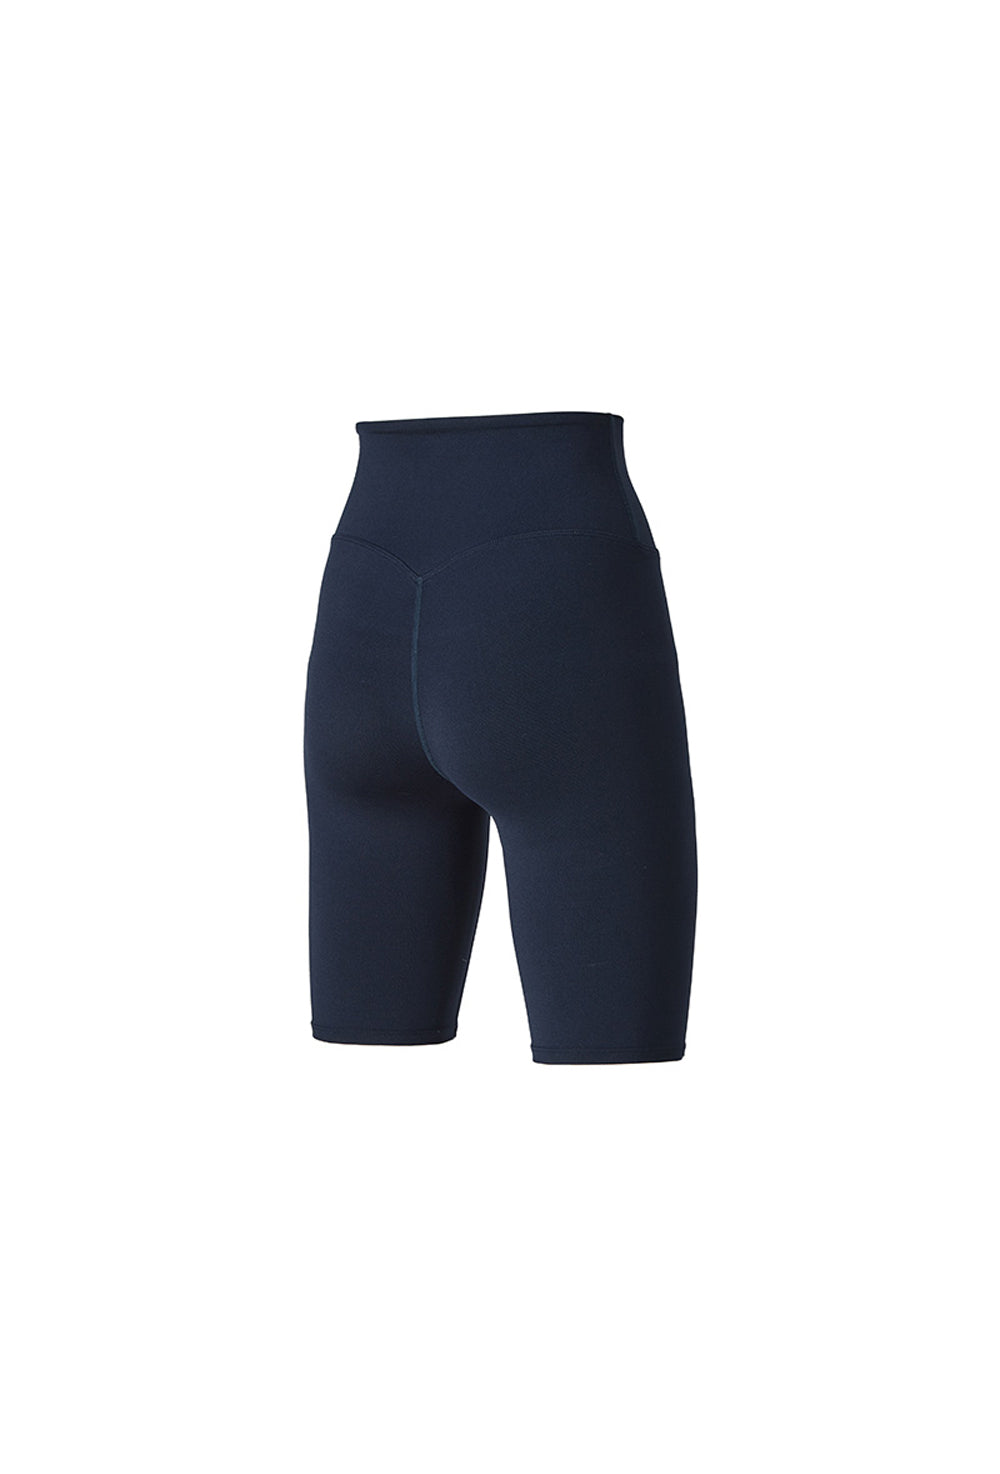 XELLA Intention 5 Biker Shorts - Ocean Navy